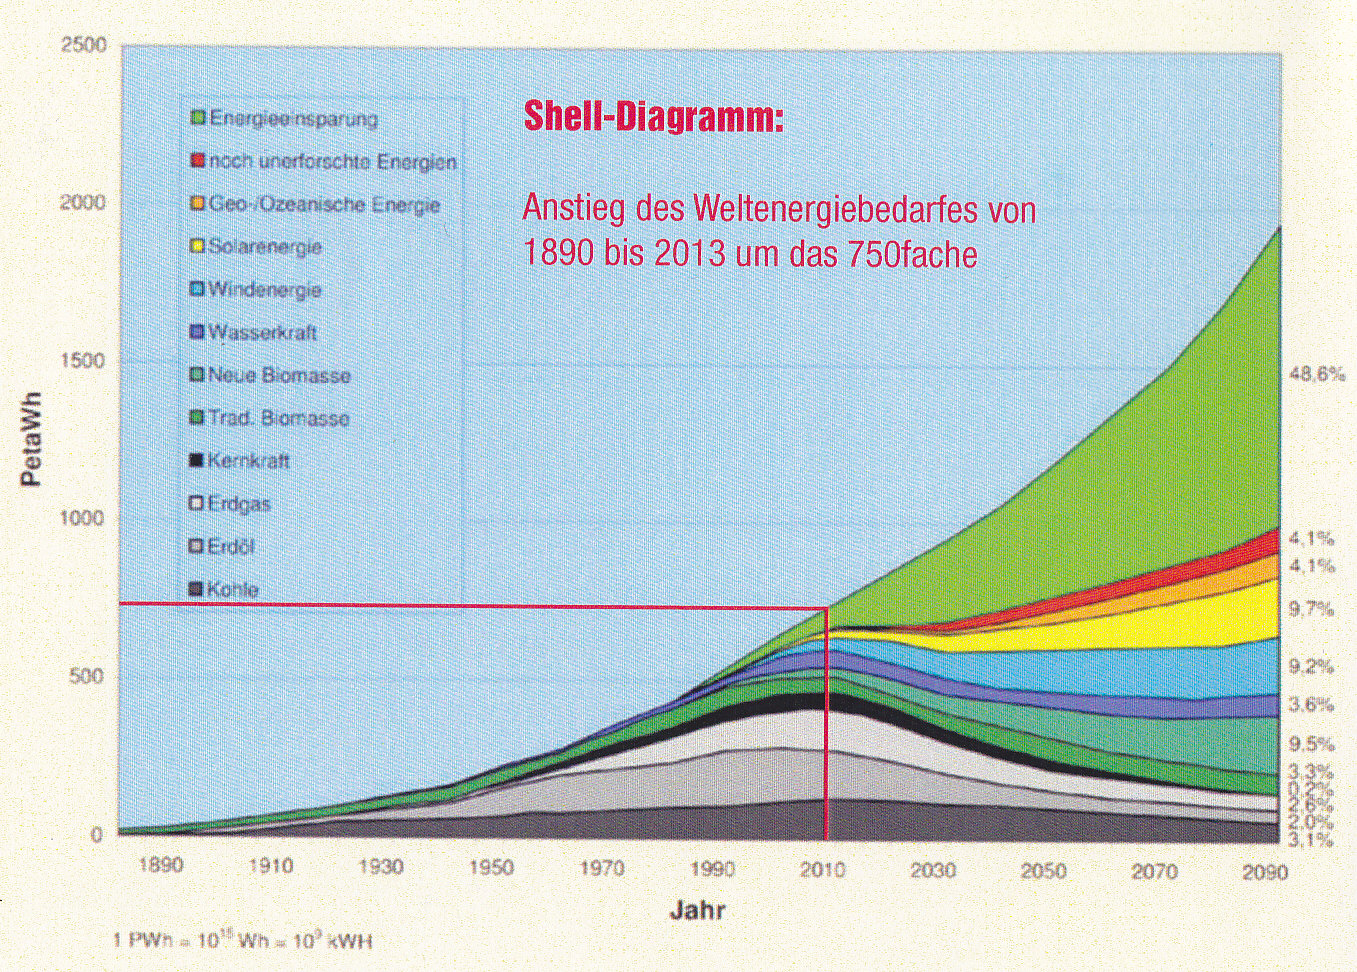 Shell-Diagramm: Anstieg des Weltenergiebedarfes von 1890 bis 2013